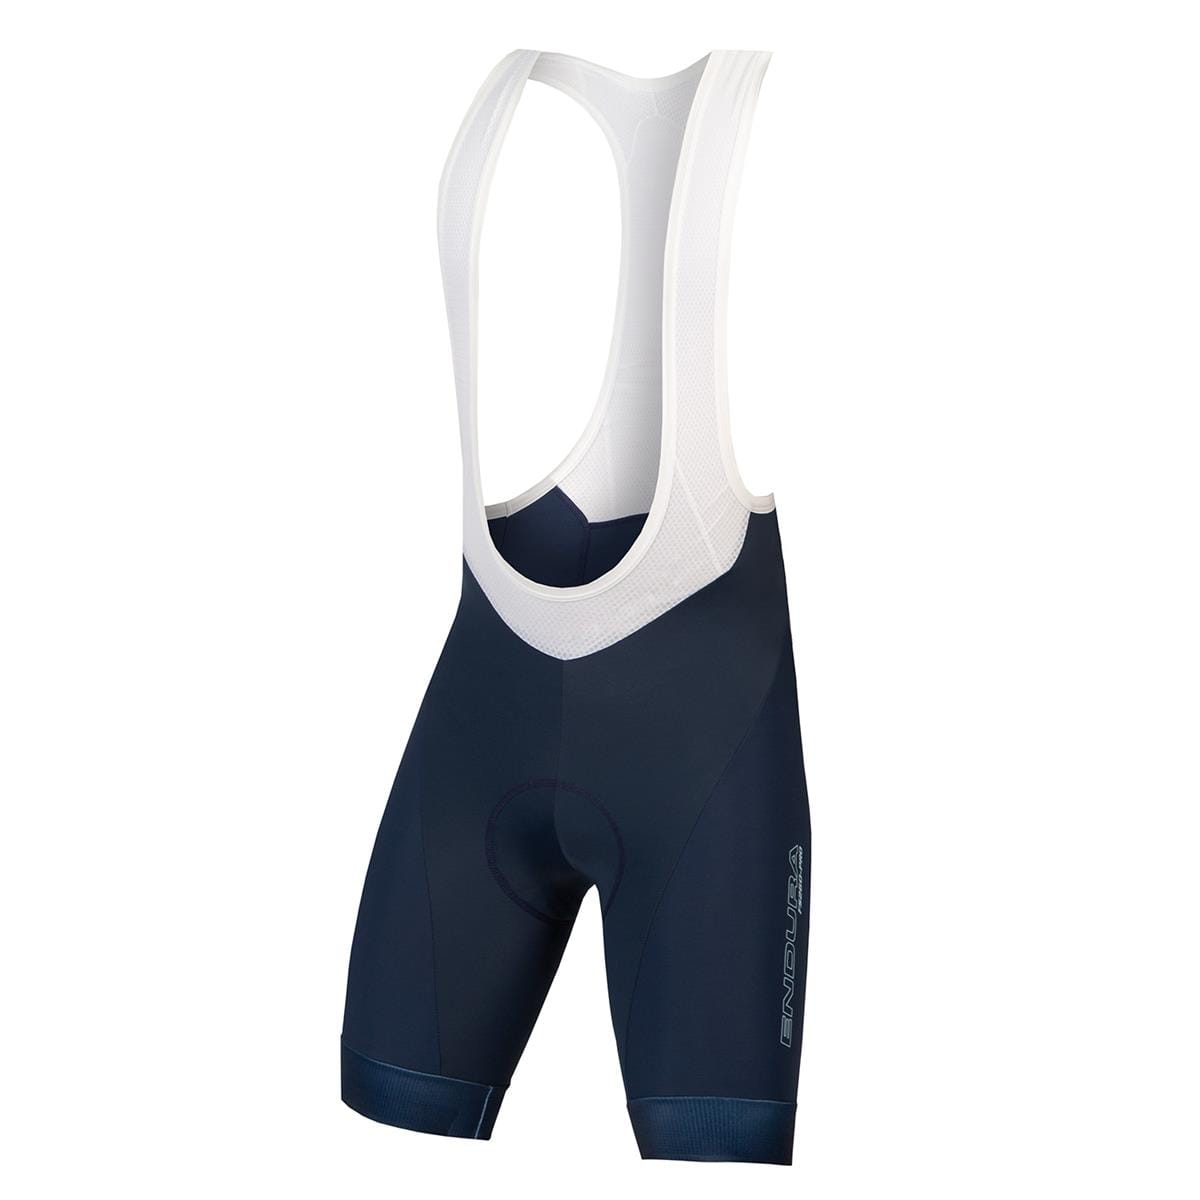 FS260-Pro Bibshort - Blue | Bib shorts | Cycling Bottoms | Clothing ...